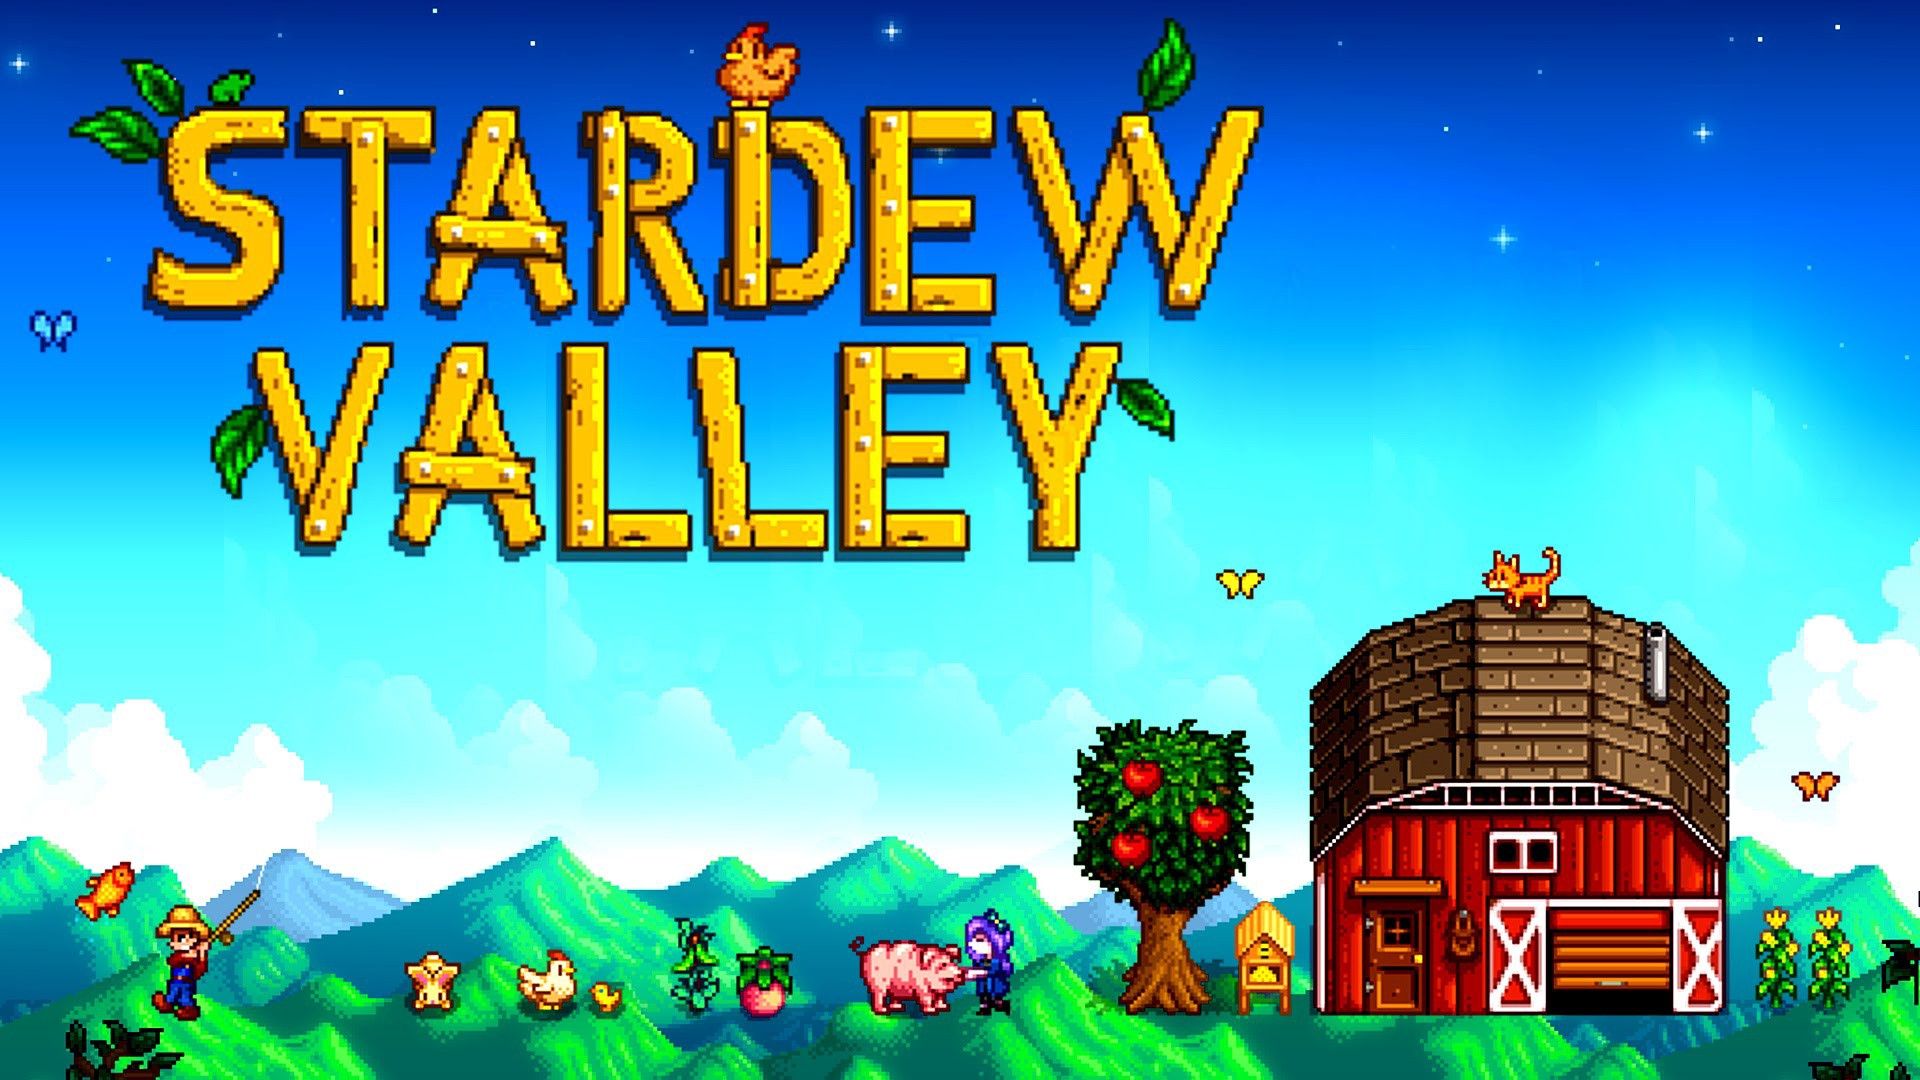 Stardew Valley เกมปลูกผักยอดฮิตจาก PC ย้ายลงมือถือแล้วทั้ง Android และ iOS